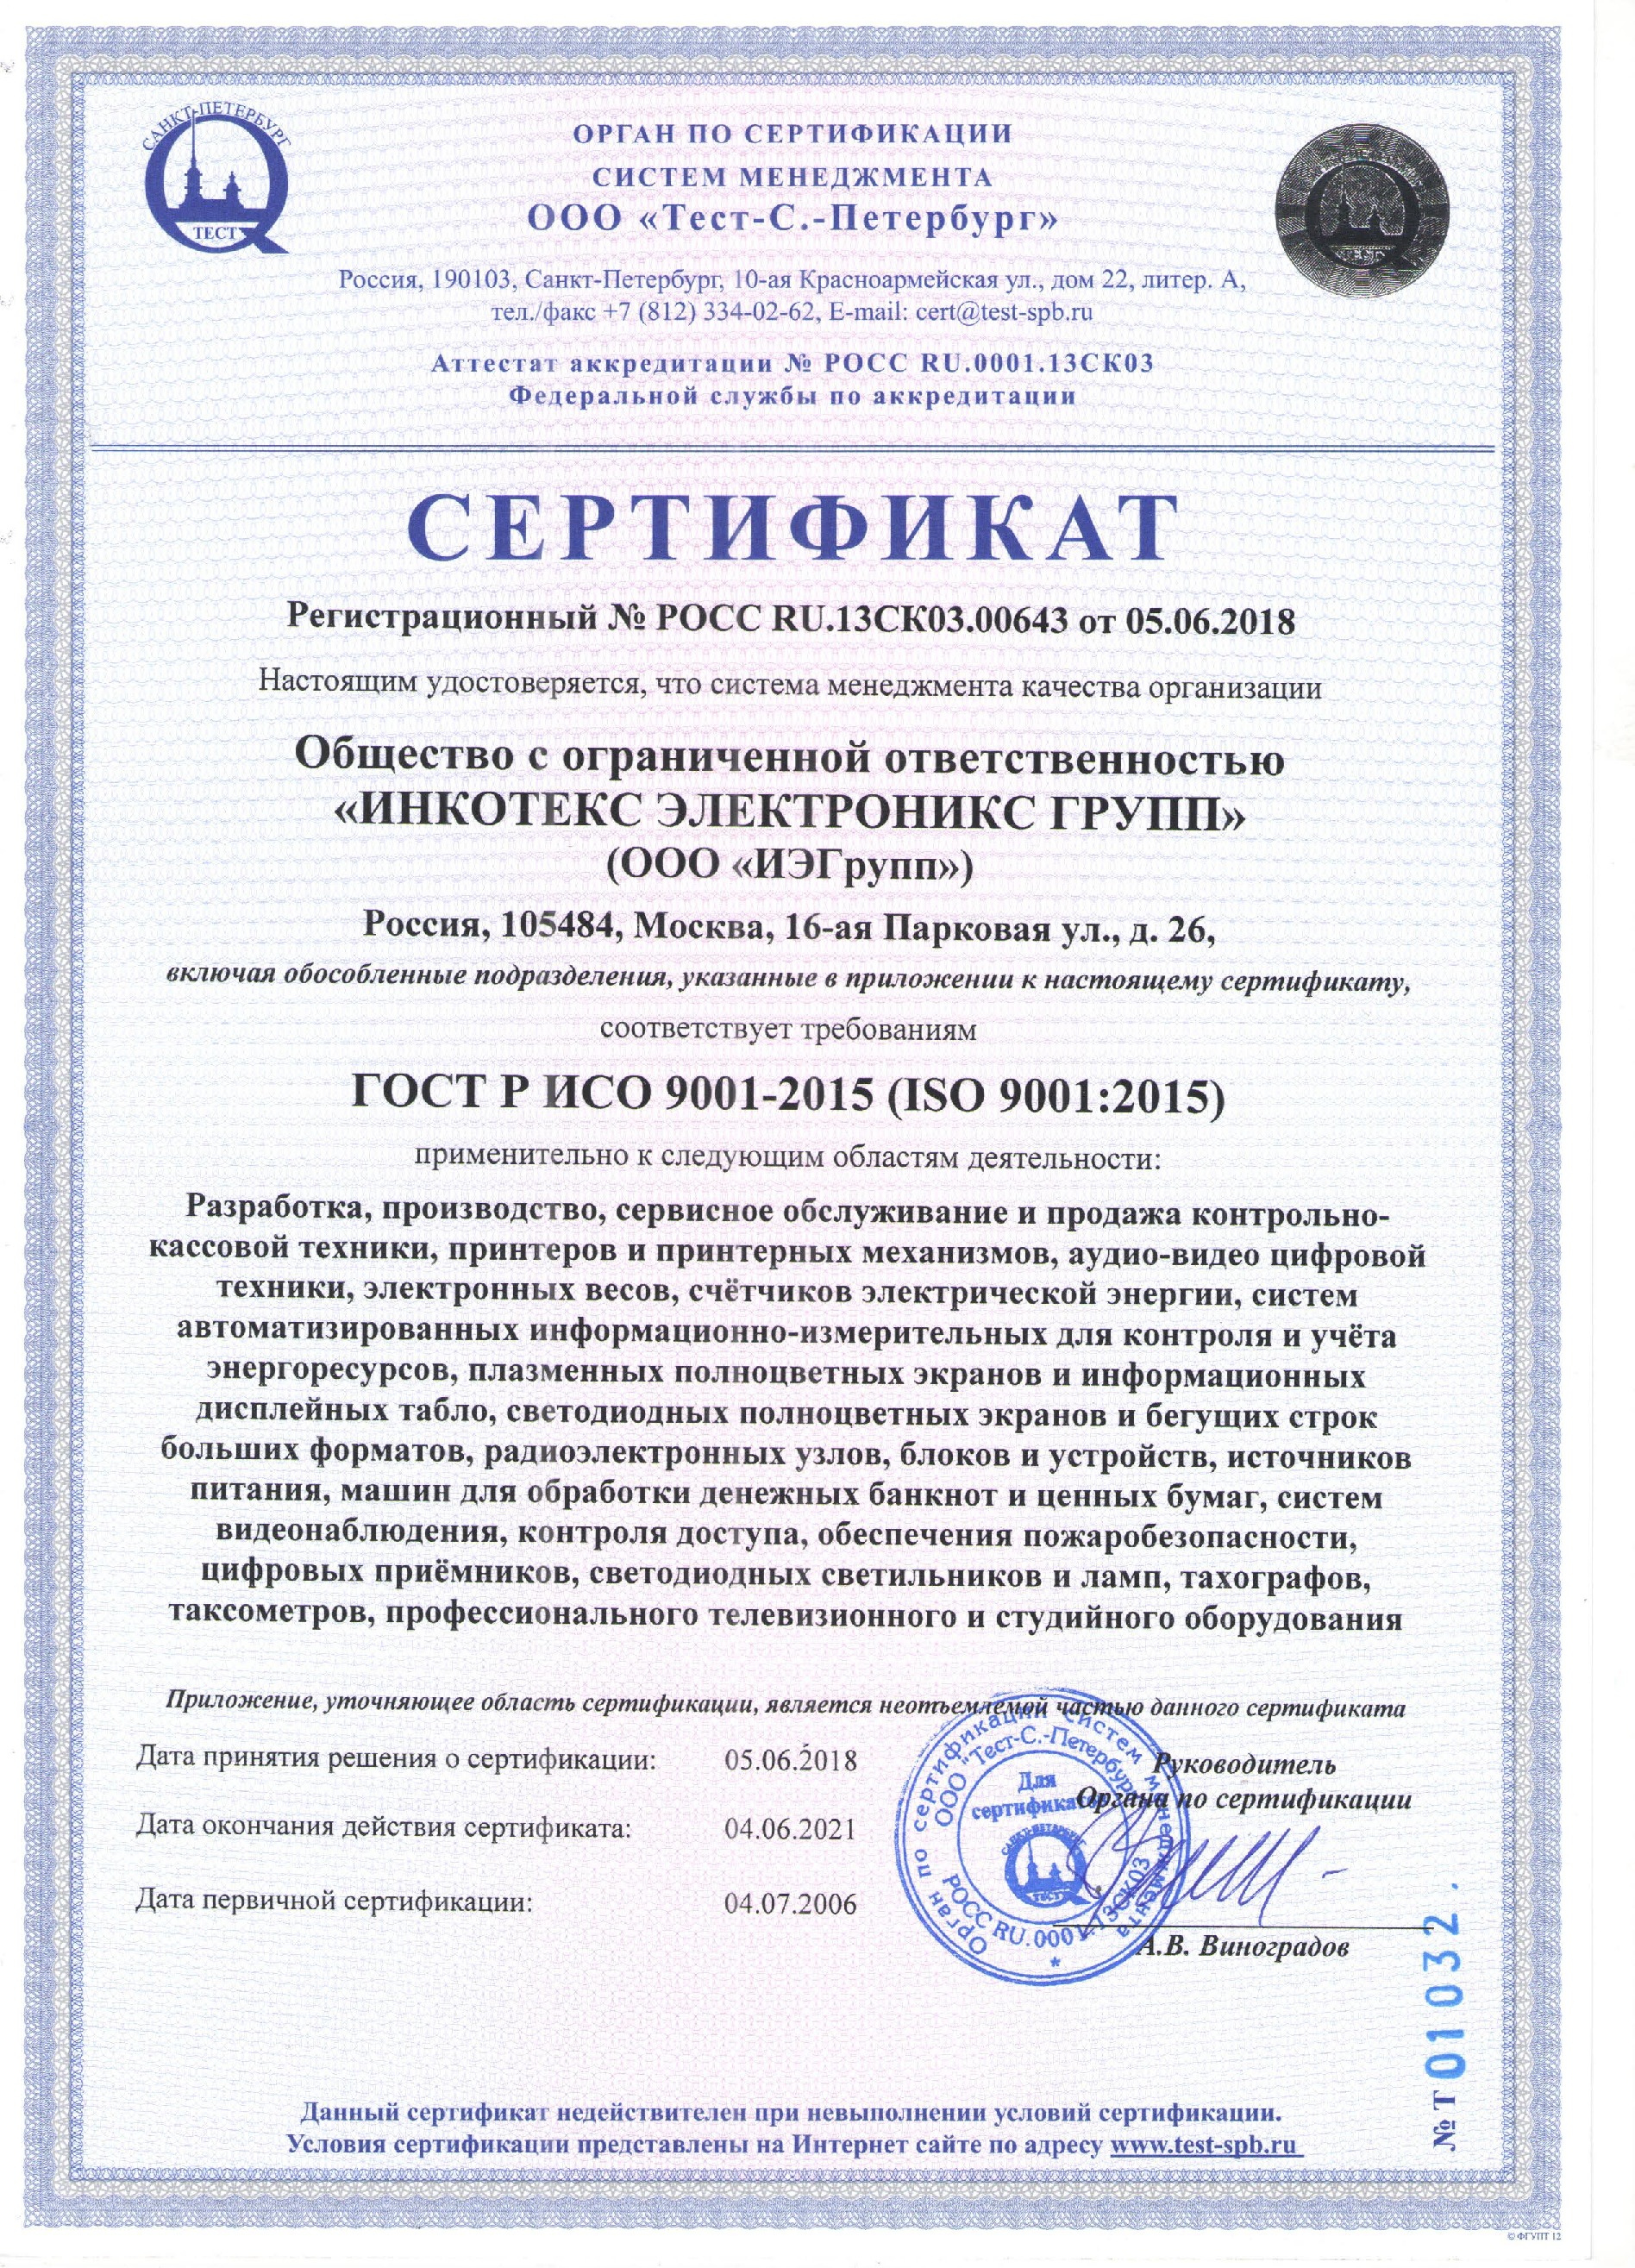  Международный сертификат ISO от 05.06.2018